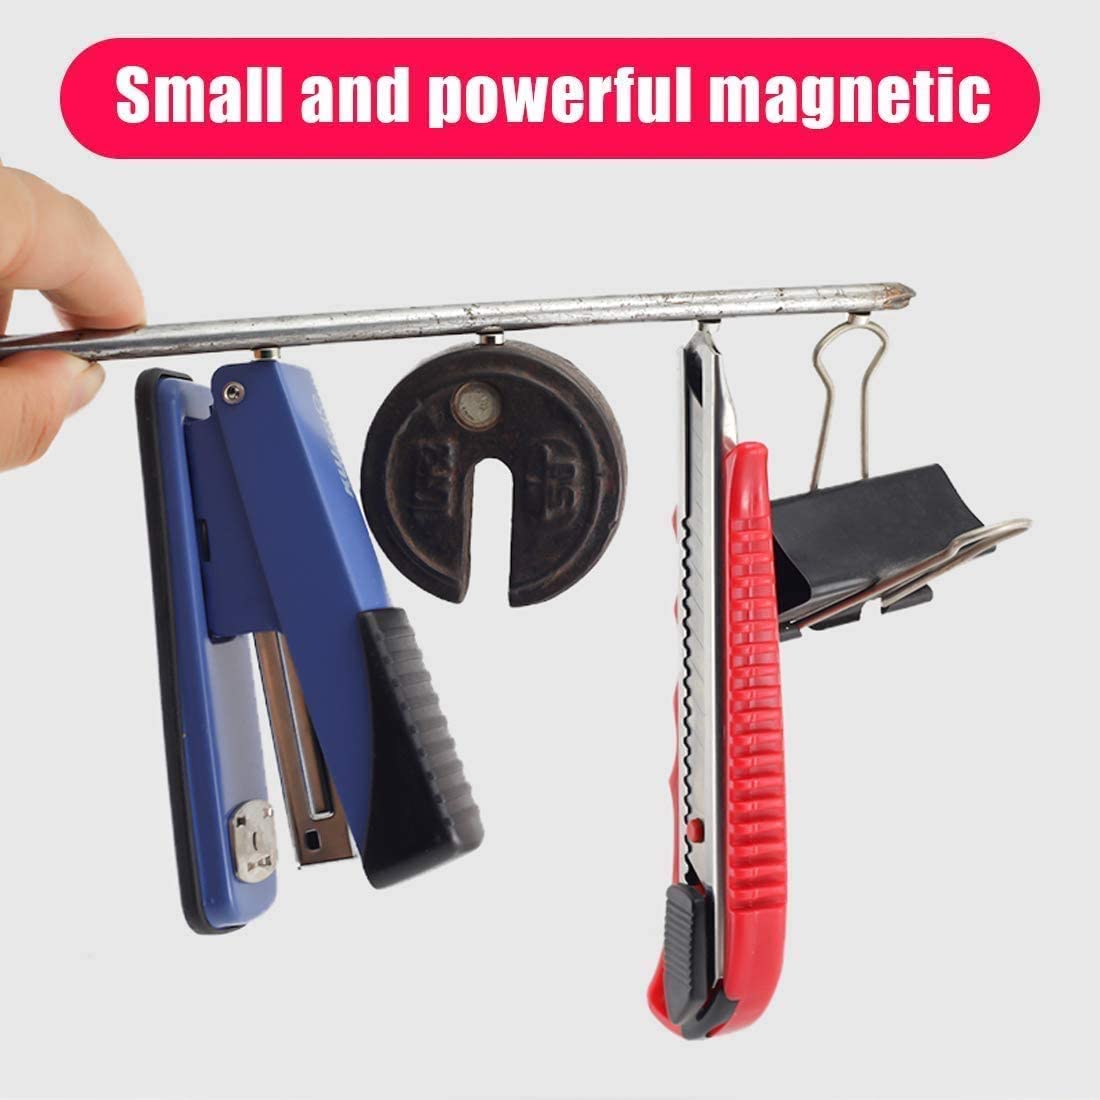 FINDMAG 50 Pcs 6 x 2 mm Fridge Magnets, Premium Brushed Nickel Refrigerator Magnets, Magnets for Fridge, Magnets for Whiteboard, Magnets for Crafts, Small Magnets, Mini Magnets, Office Magnets - (For 12 piece(s))